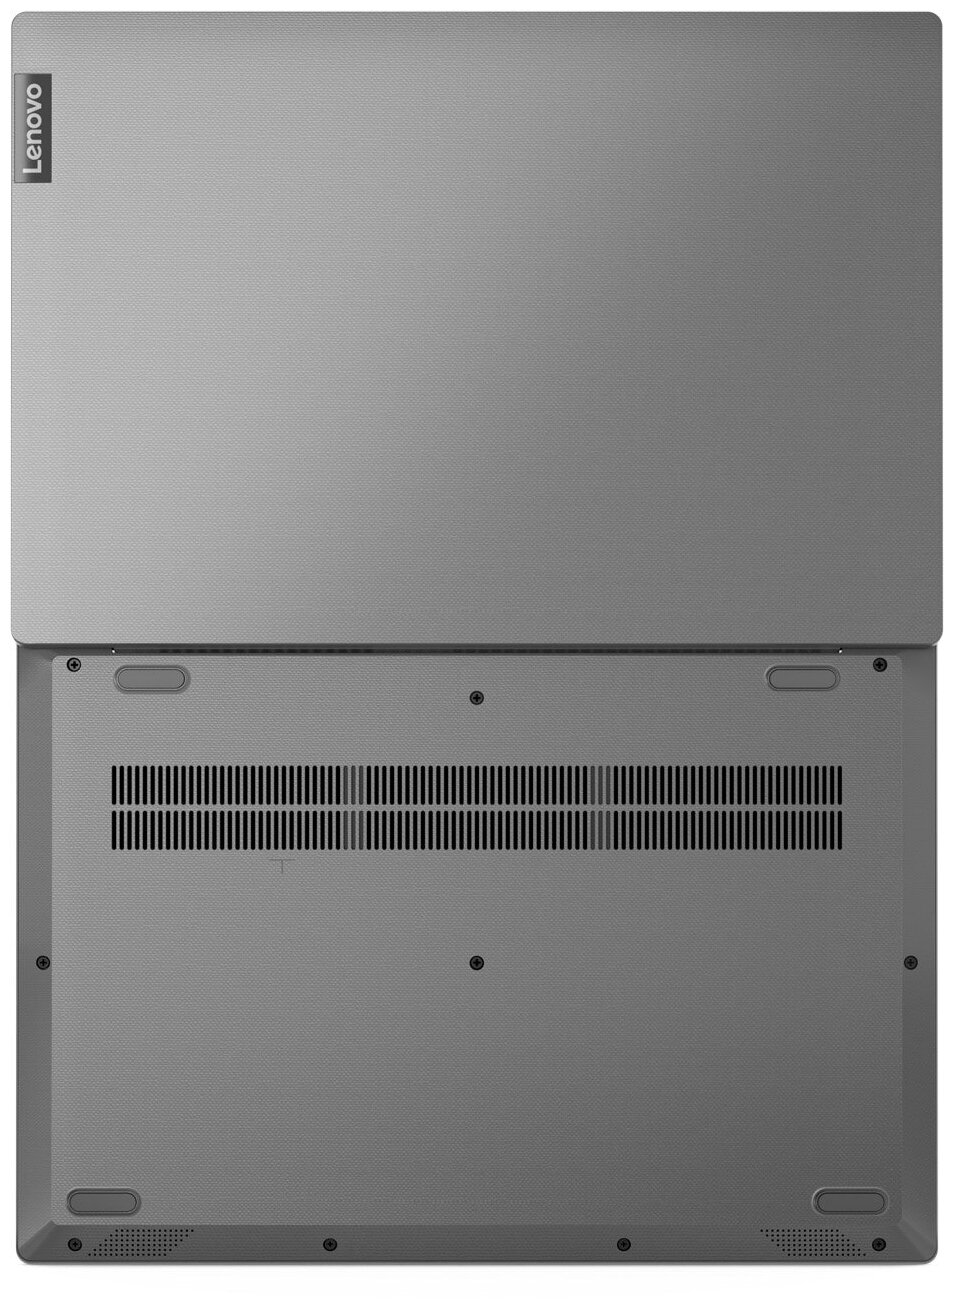 Ноутбук Lenovo V15-iil 15.6FHD_TN_AG_220N_N/ Core_i5-1035g1_1.0g_4c_mb/ 4GB DDR4 2400+4GB DDR4 2400/